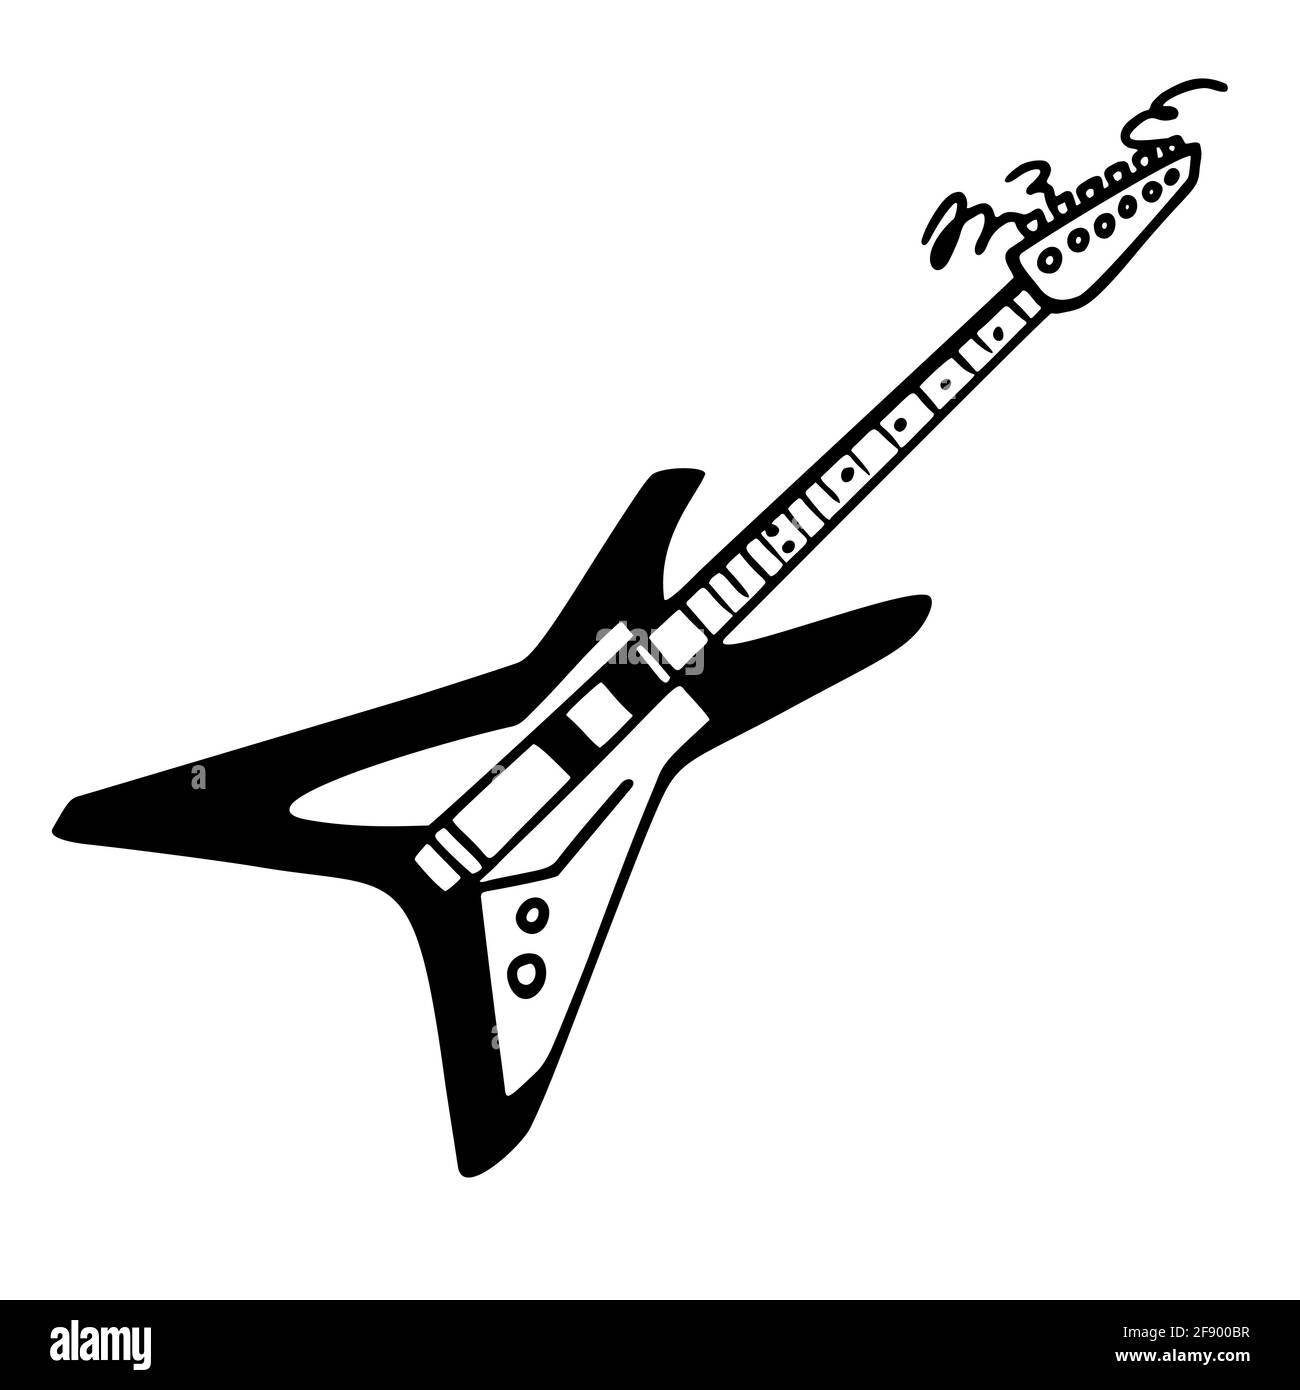 Collezione Punk rock. Icona di chitarra elettrica monocromatica, chitarra  rock stealth a forma di stella. Illustrazione vettoriale su sfondo bianco  Immagine e Vettoriale - Alamy